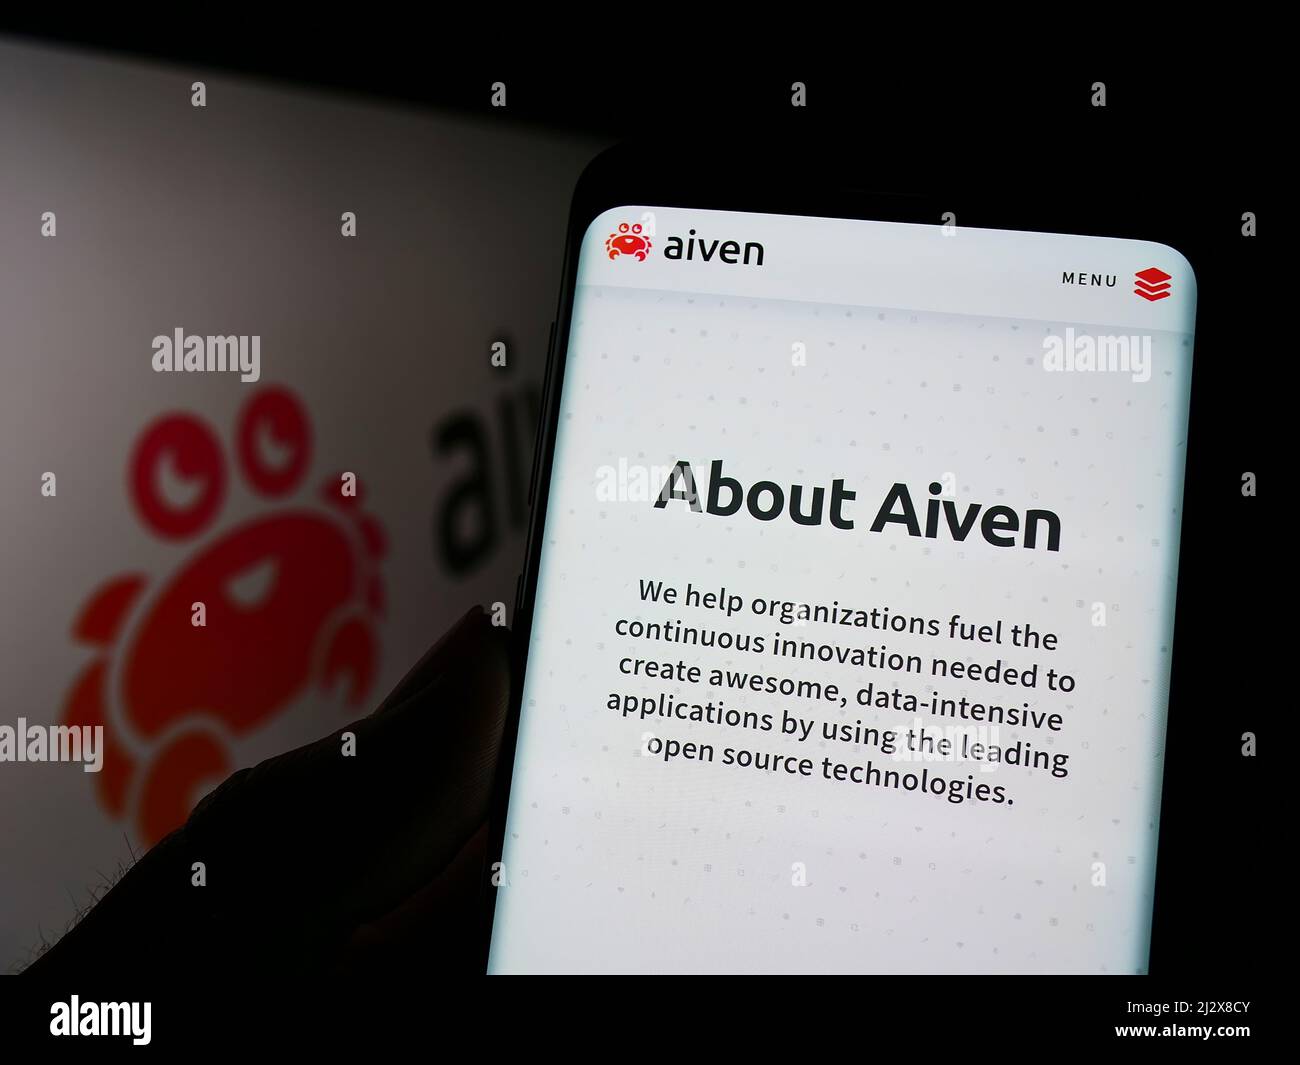 Person, die Mobiltelefon mit der Webseite des IT-Unternehmens Aiven Oy auf dem Bildschirm vor dem Logo hält. Konzentrieren Sie sich auf die Mitte des Telefondisplays. Stockfoto